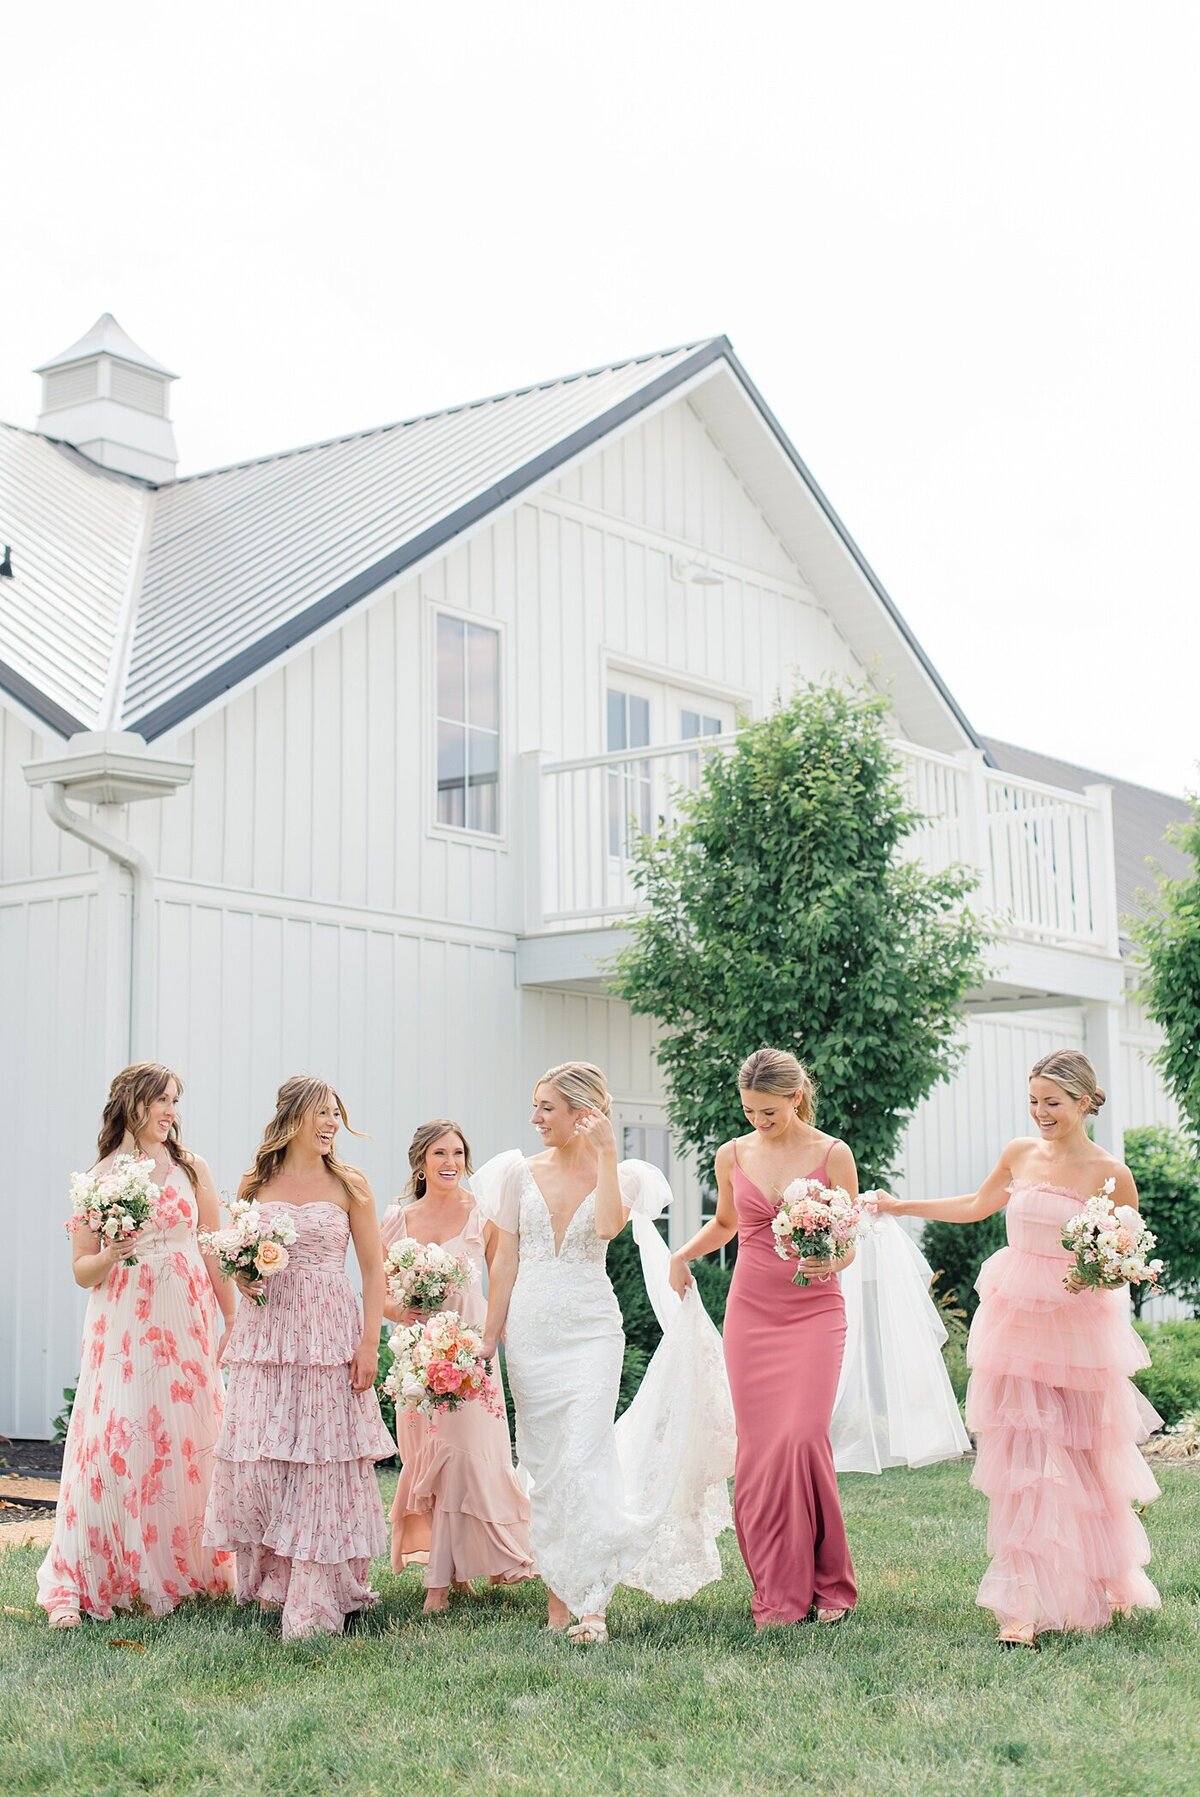 Magnolia-Hill-Farm-Wedding-Ashleigh-Grzybowski-Photography-43